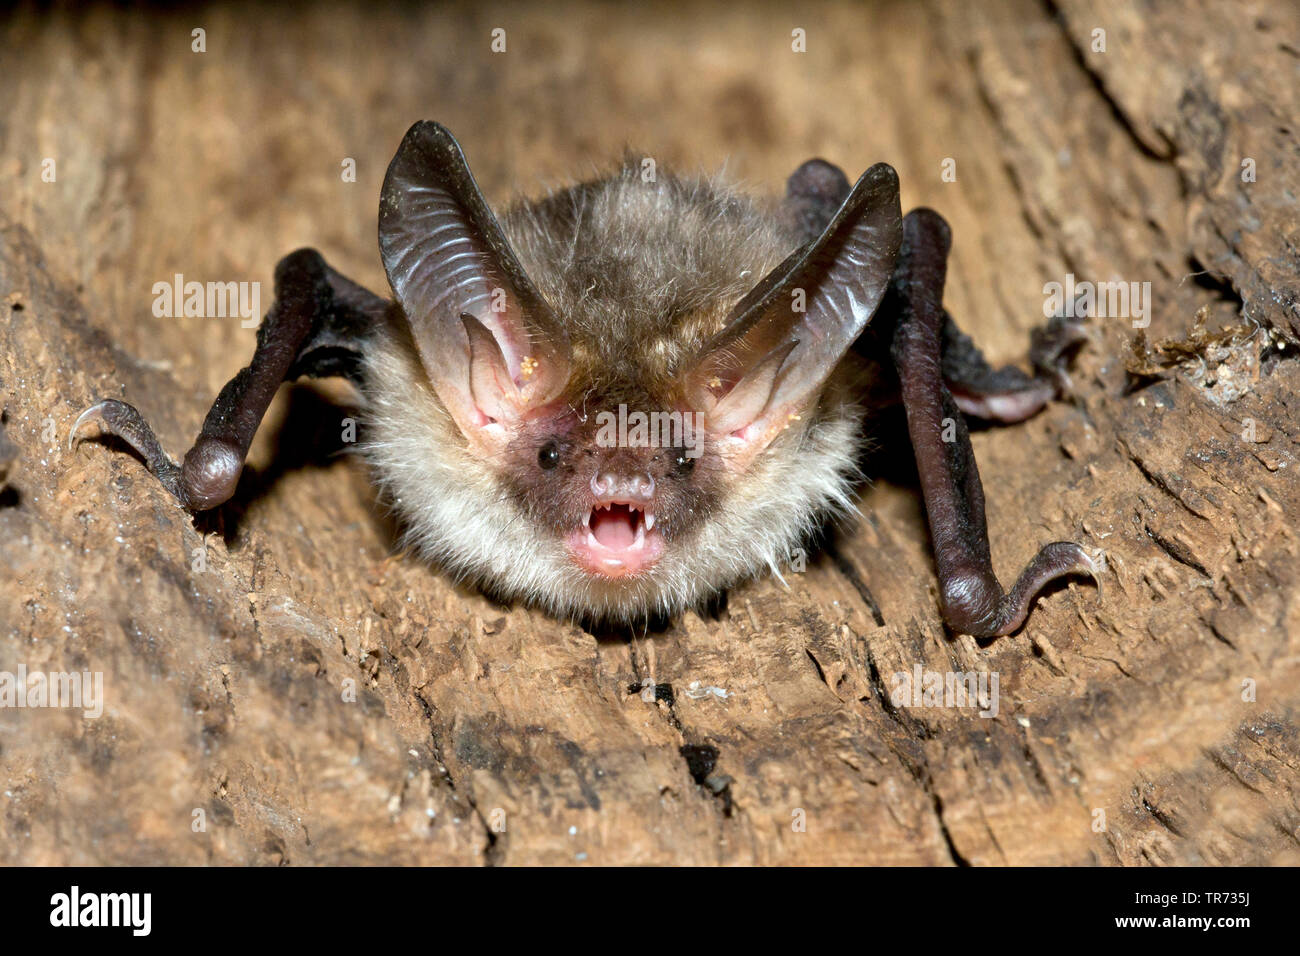 La bat Bechstein (Myotis bechsteinii), avec la bouche ouverte dans un trou d'arbre, Belgique Banque D'Images